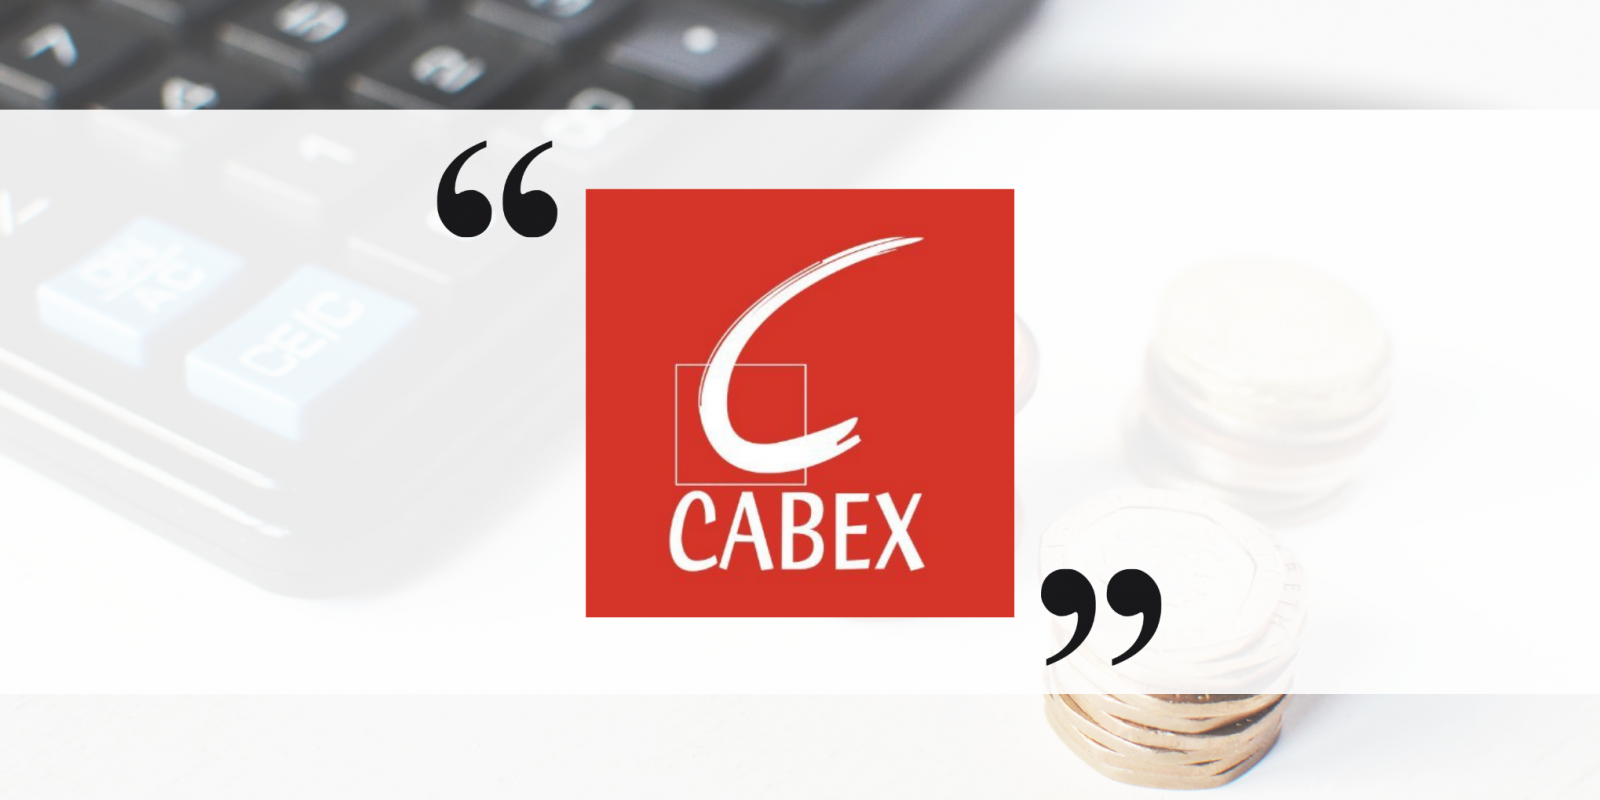 Numen devient sponsor du réseau CABEX et confirme ainsi son engagement auprès de la profession comptable